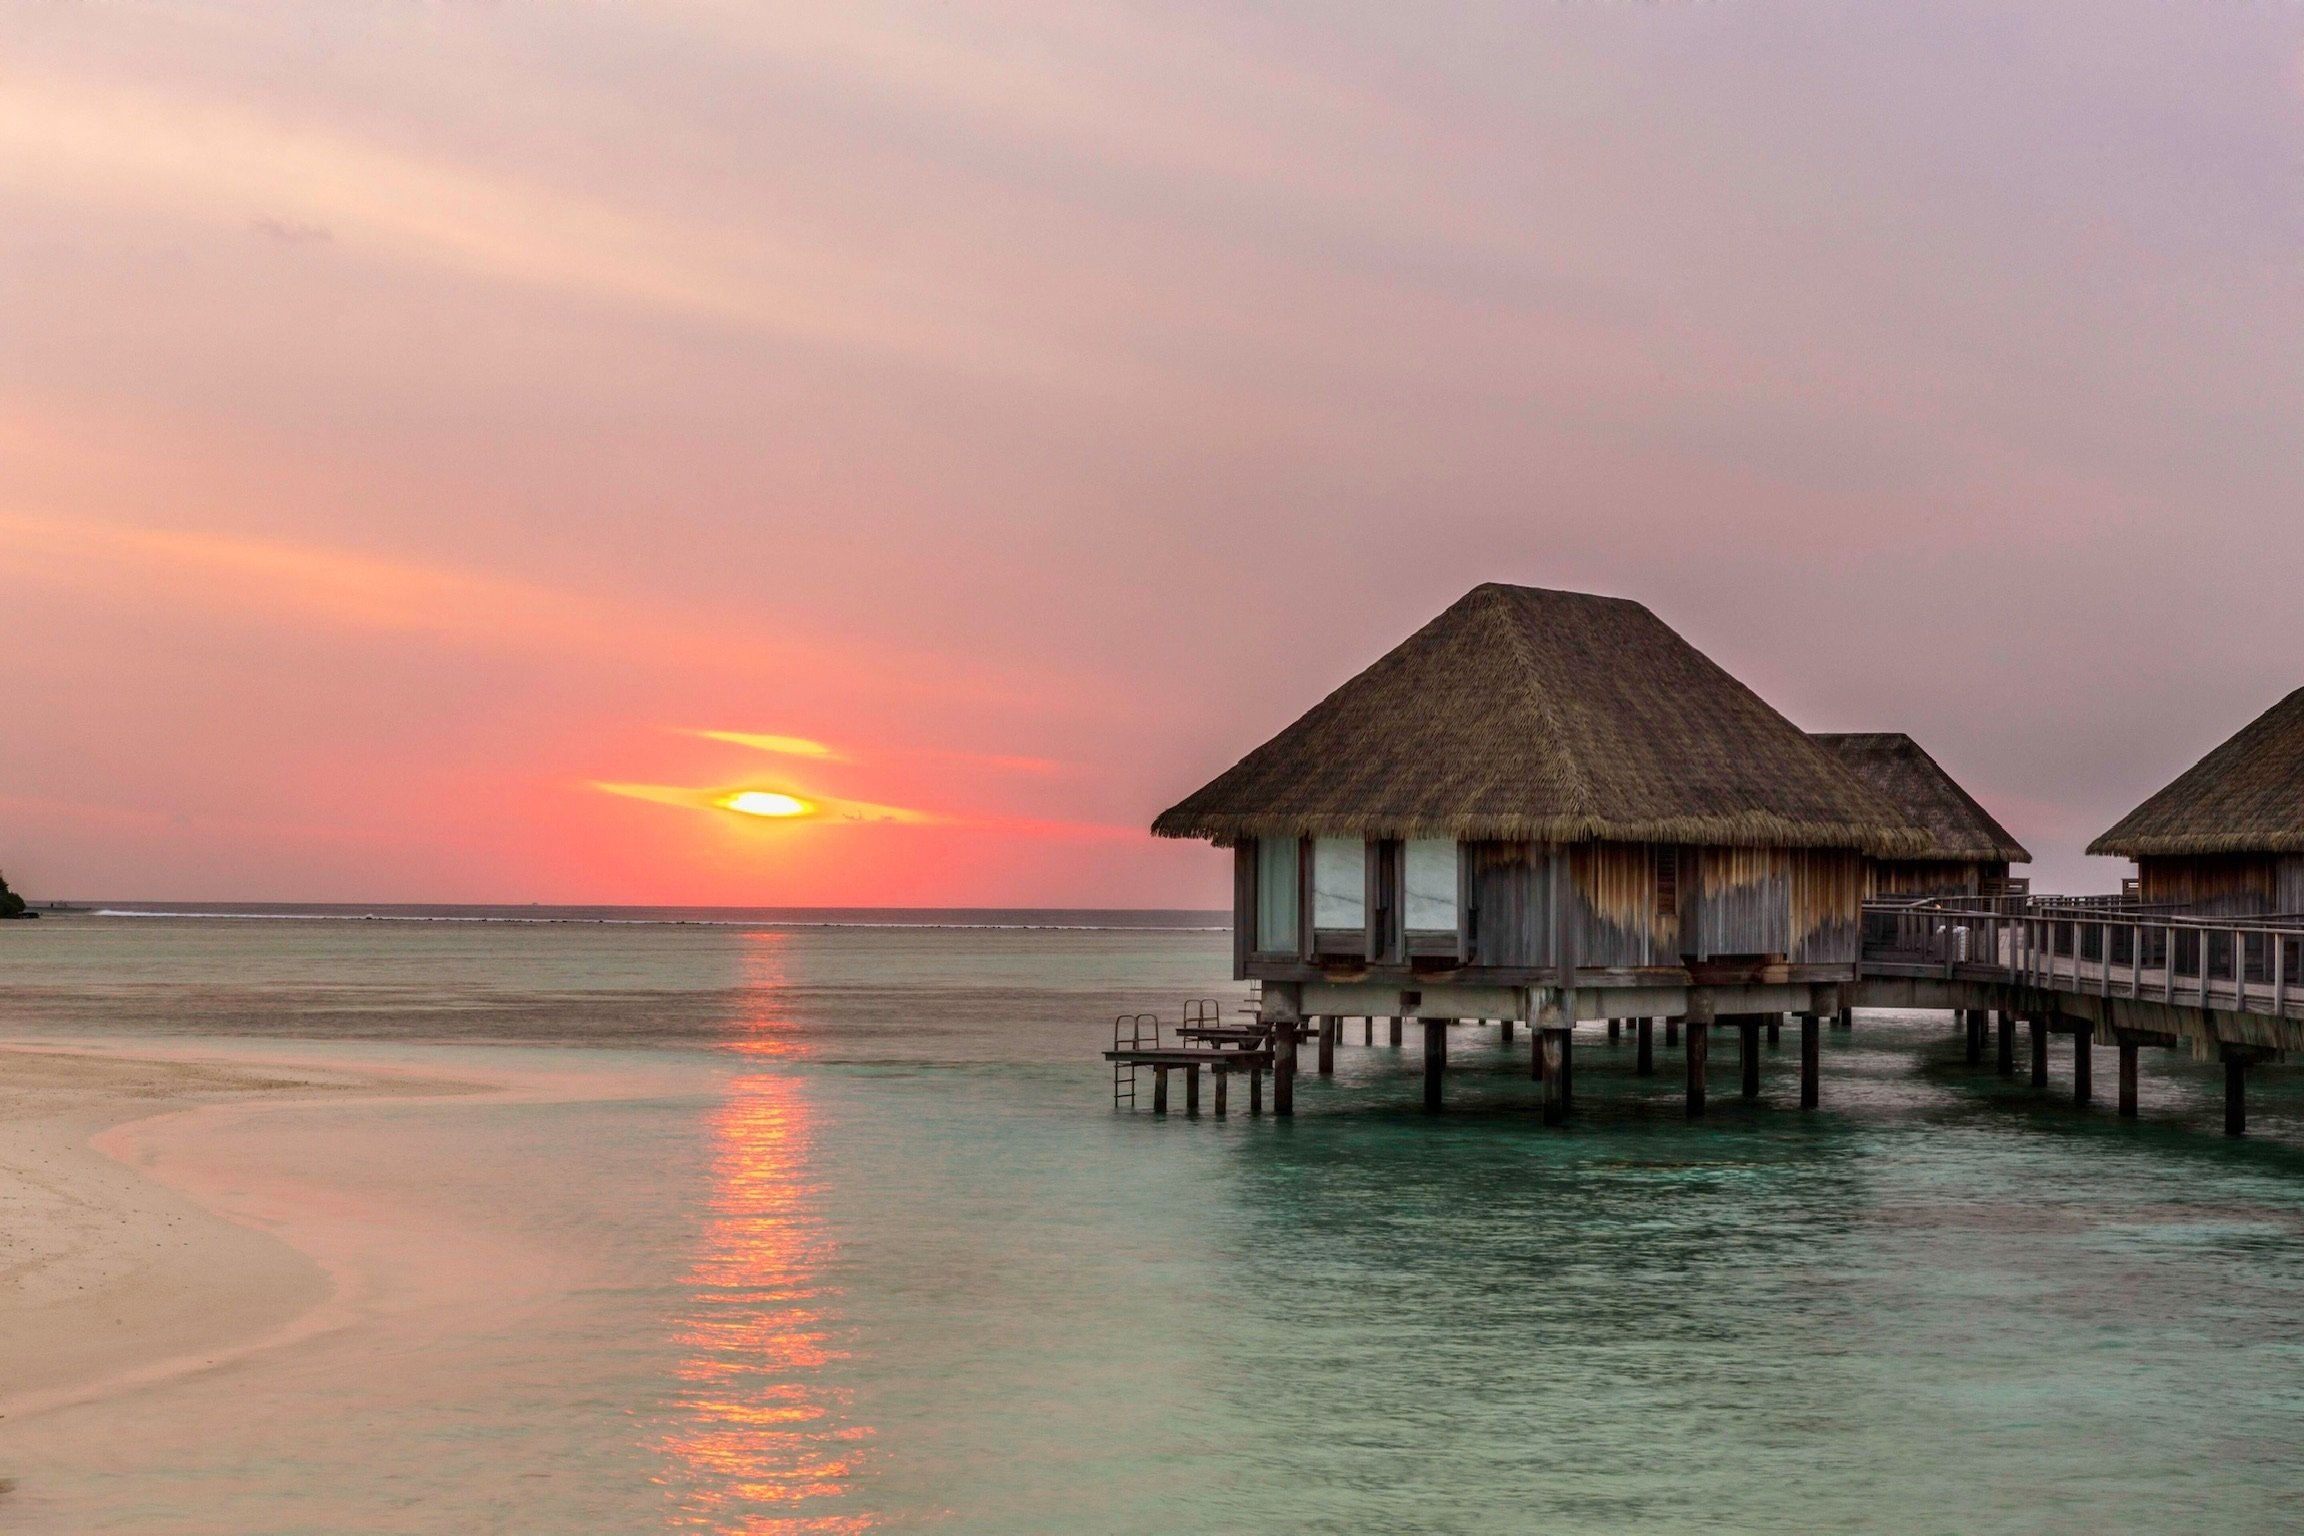 A sunset in the Maldives. (Photo by Funda Karayel)